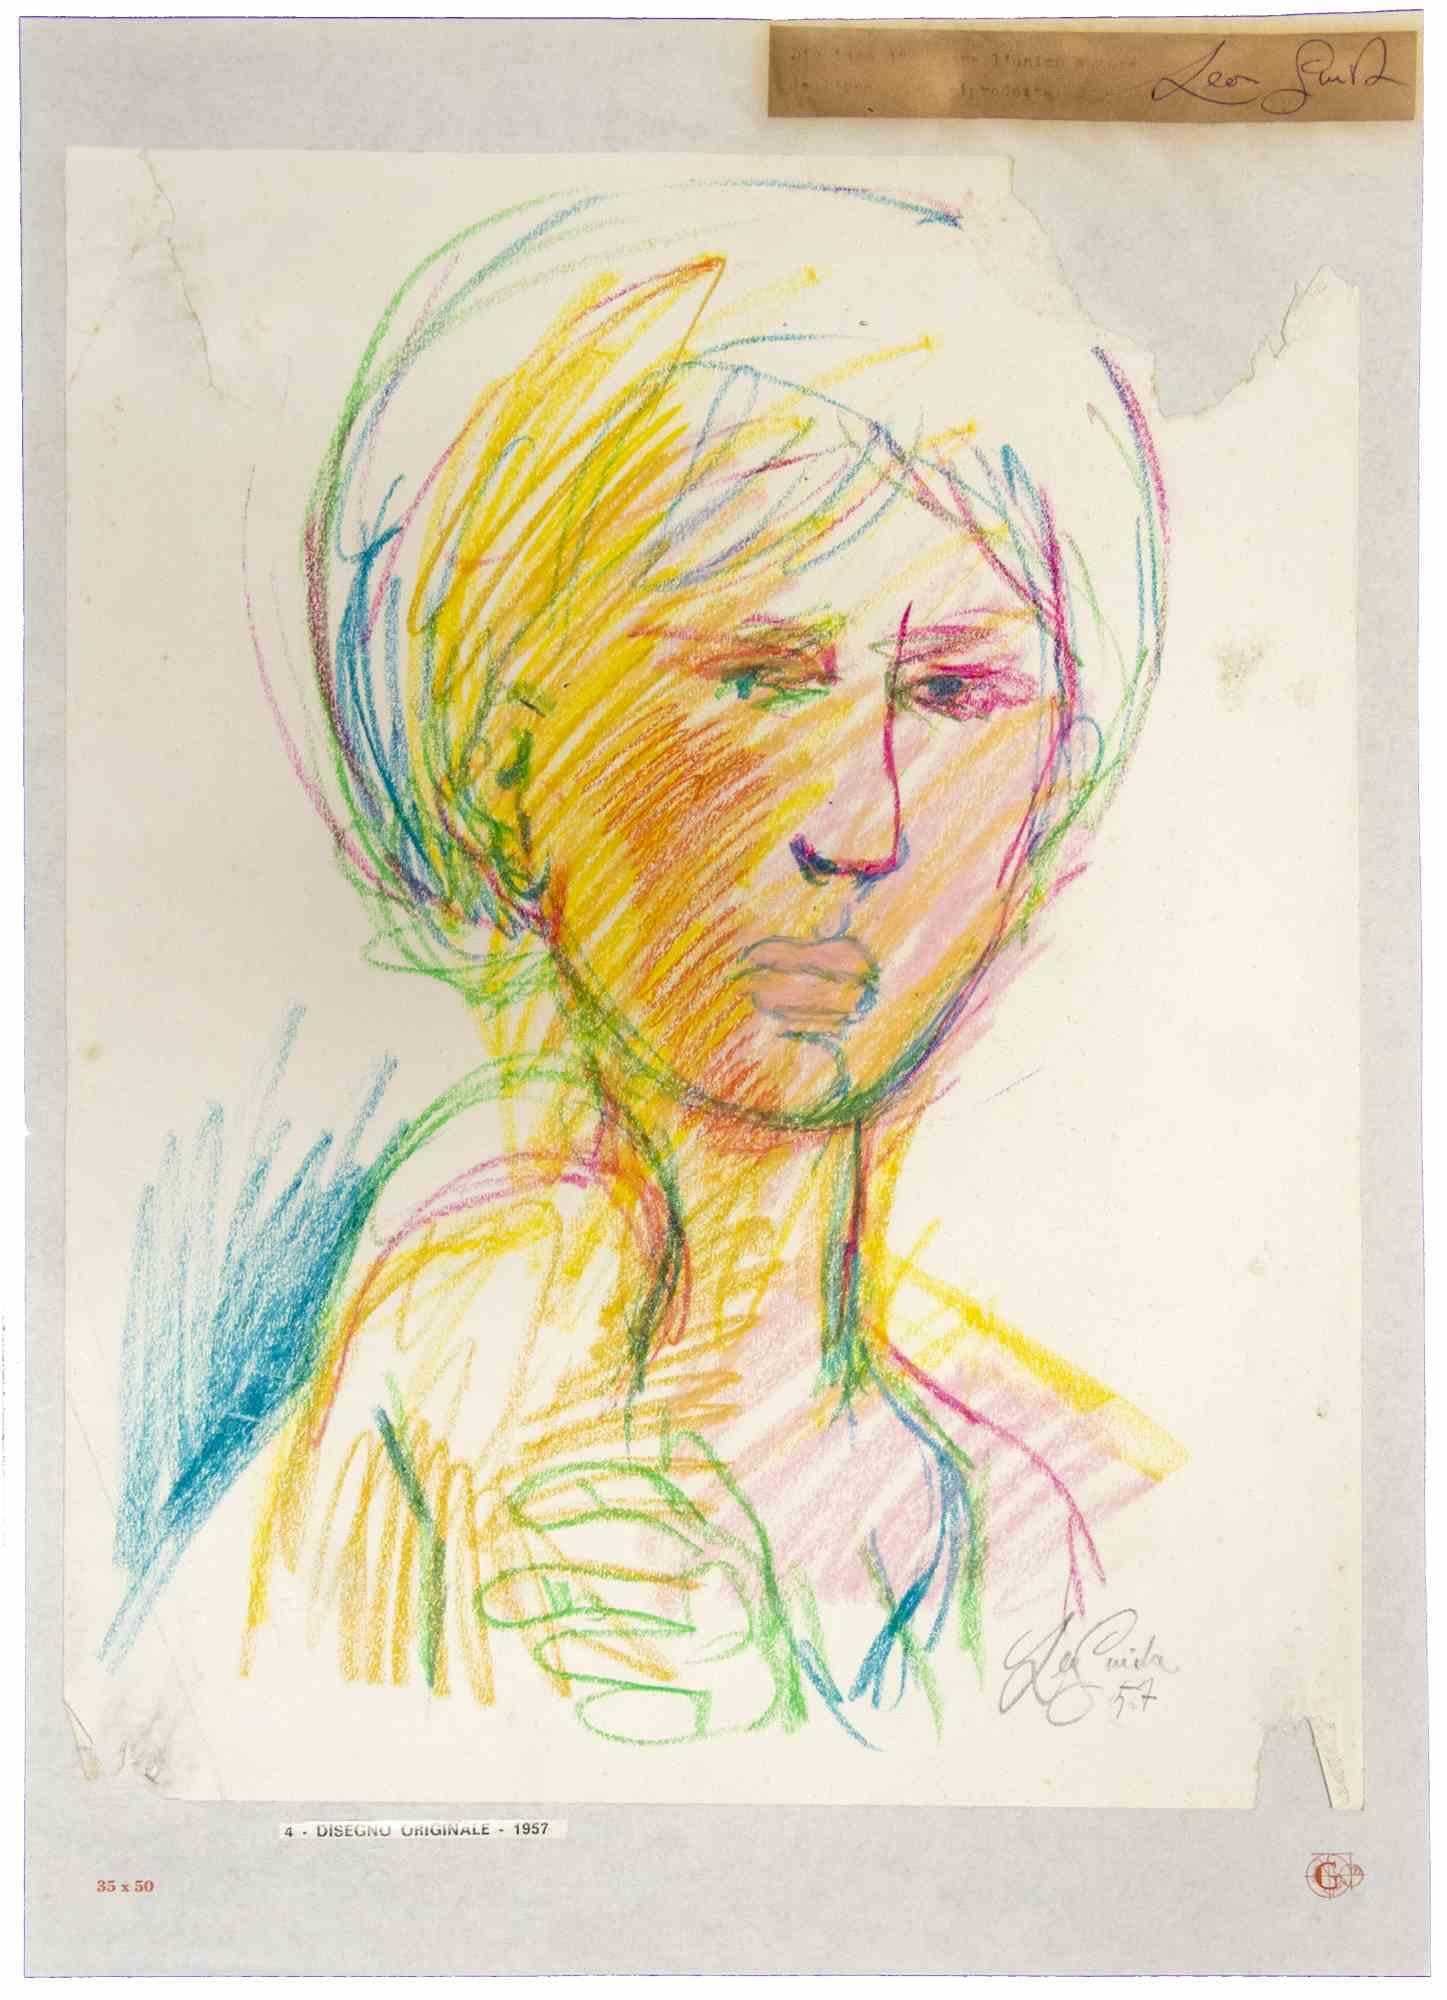 Das Porträt ist ein originales Kunstwerk.  im Jahr 1957 von dem italienischen zeitgenössischen Künstler  Leo Guida  (1992 - 2017).

Original-Pastellzeichnung auf elfenbeinfarbenem Papier, auf Karton geklebt (50,5 x 35 cm).

Am unteren Rand